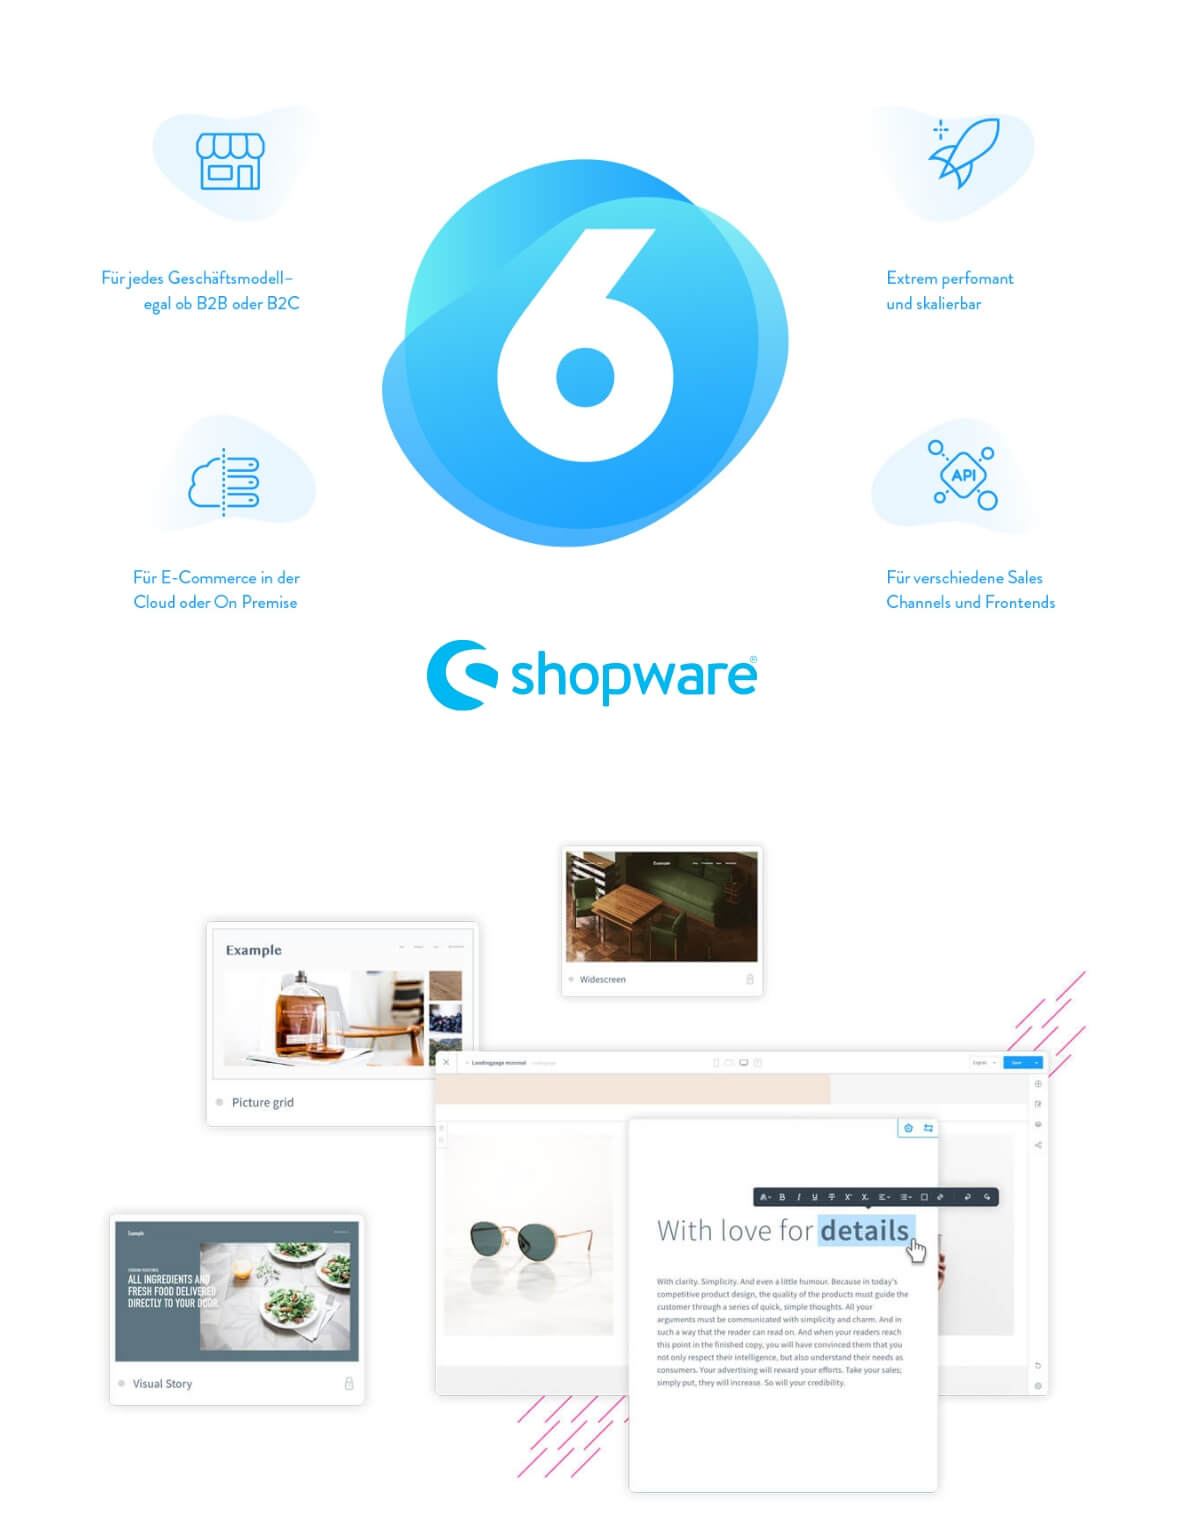 Shopware vereint Technik und Design - das intuitive Shopsystem